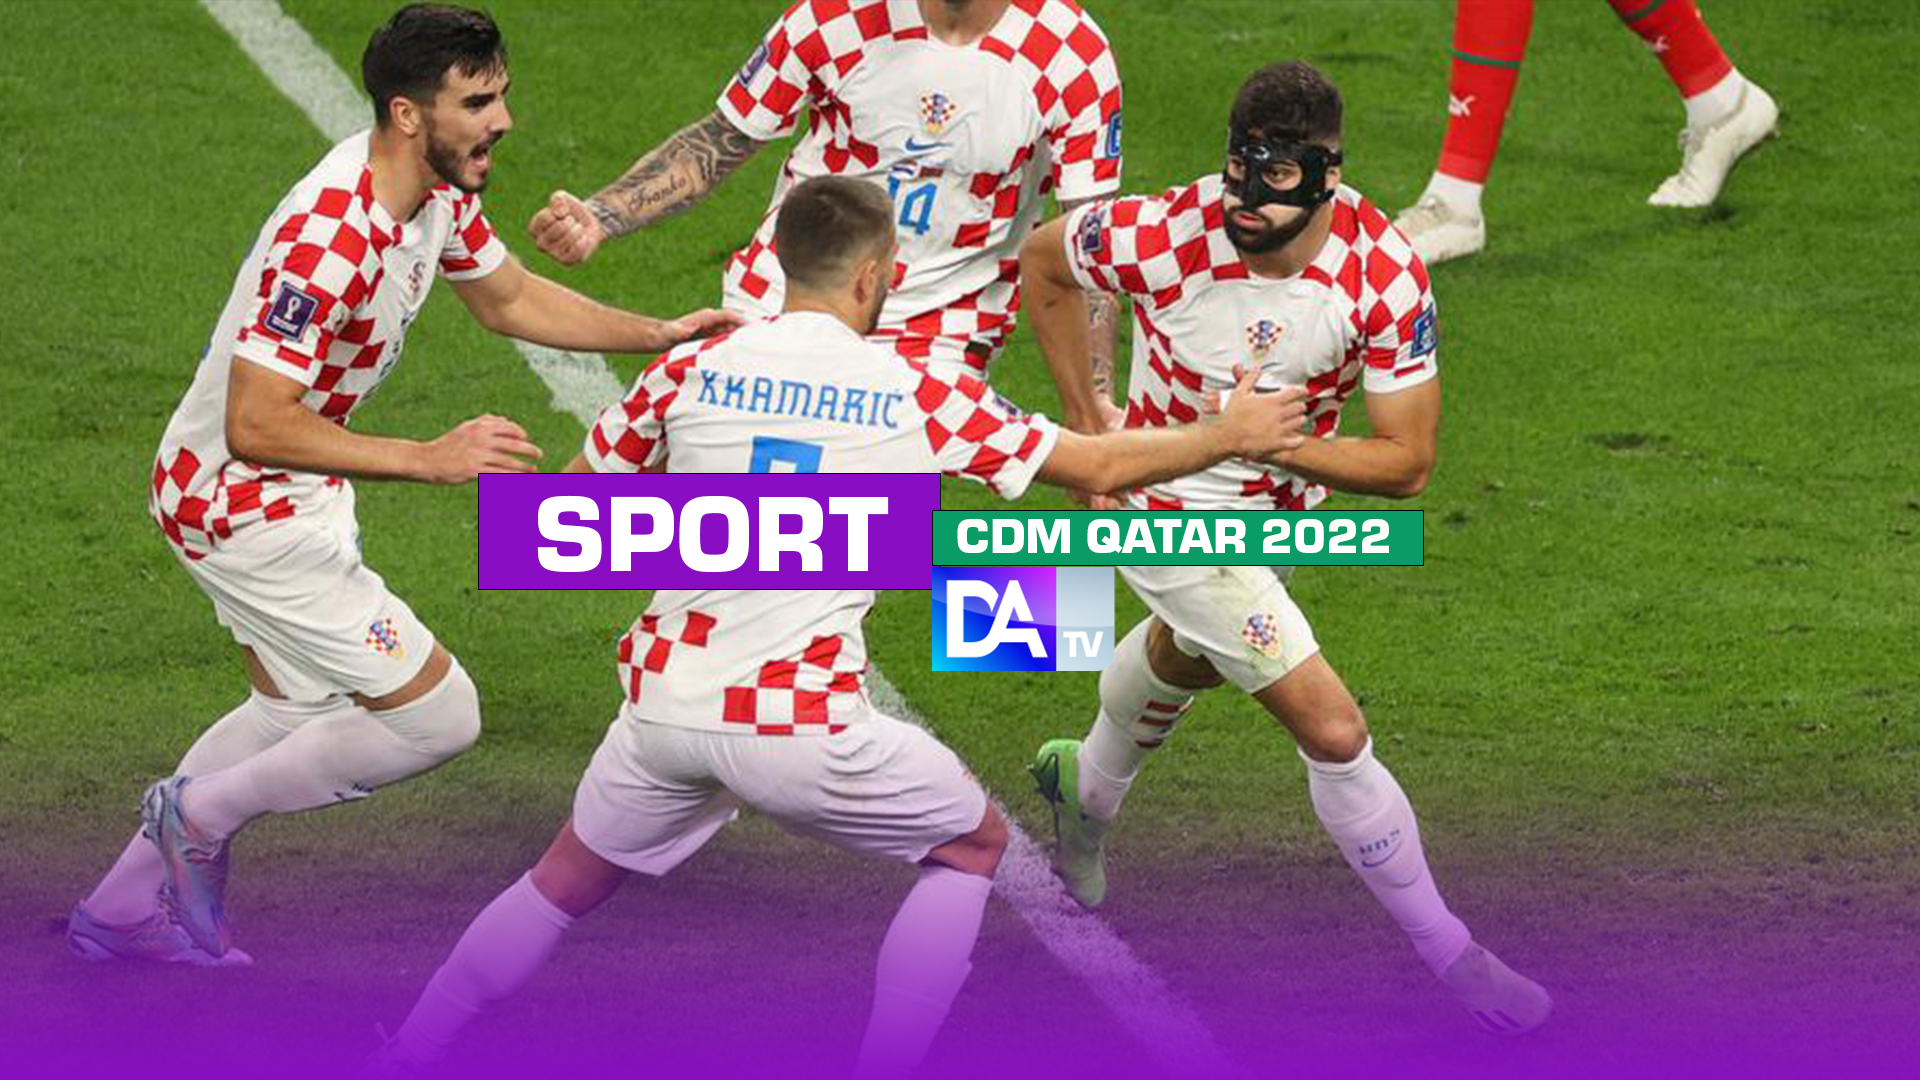 Mondial: la Croatie bat le Maroc (2-1) et prend la troisième place